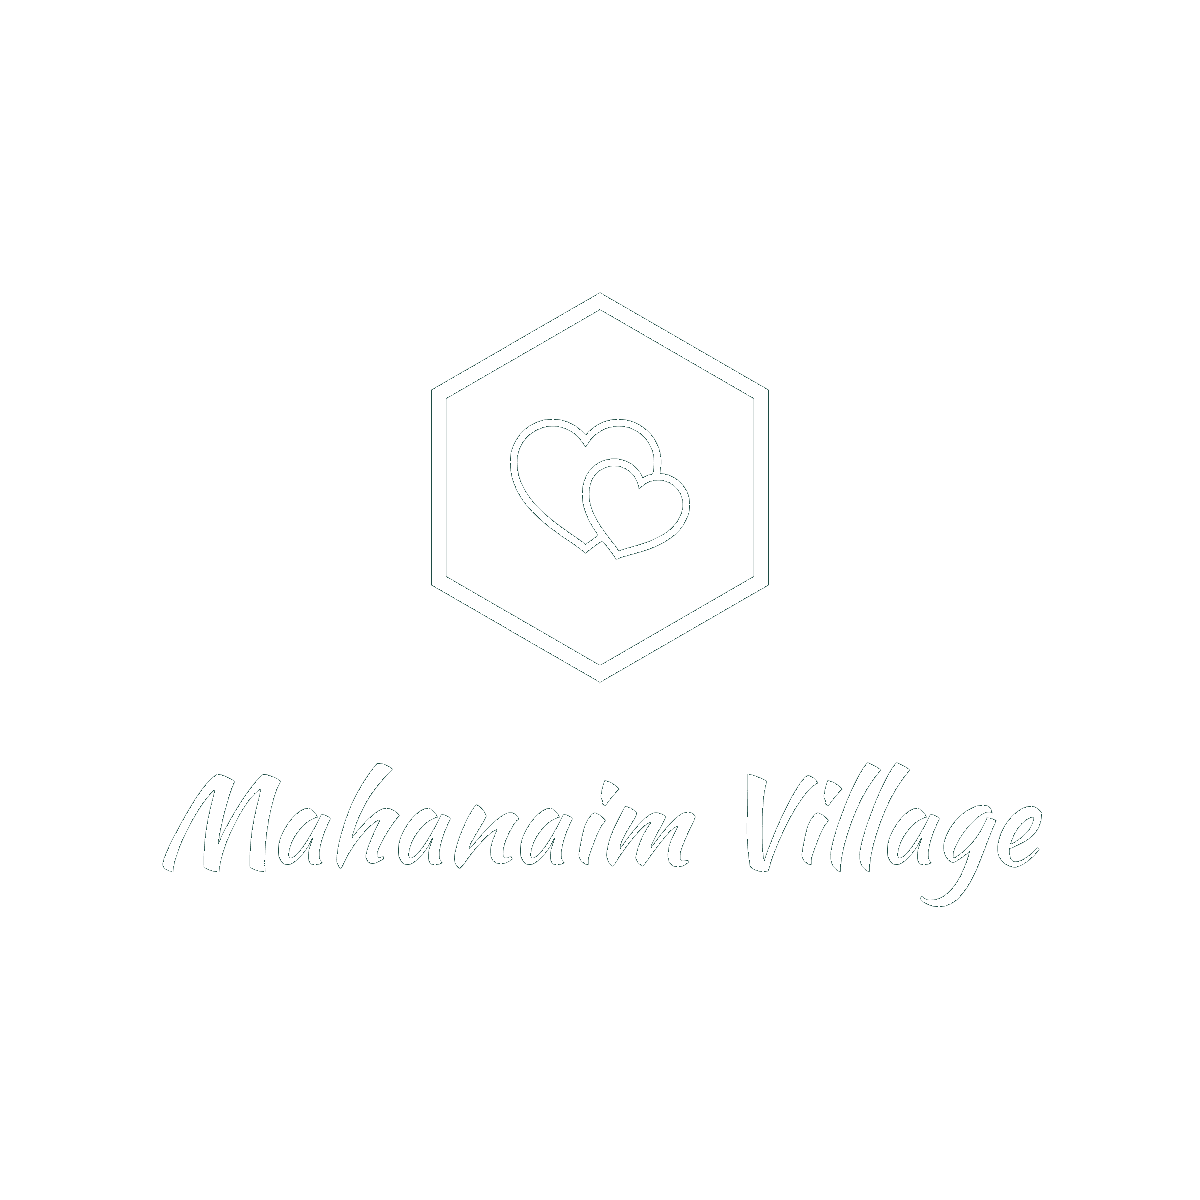 Mahanaim Village